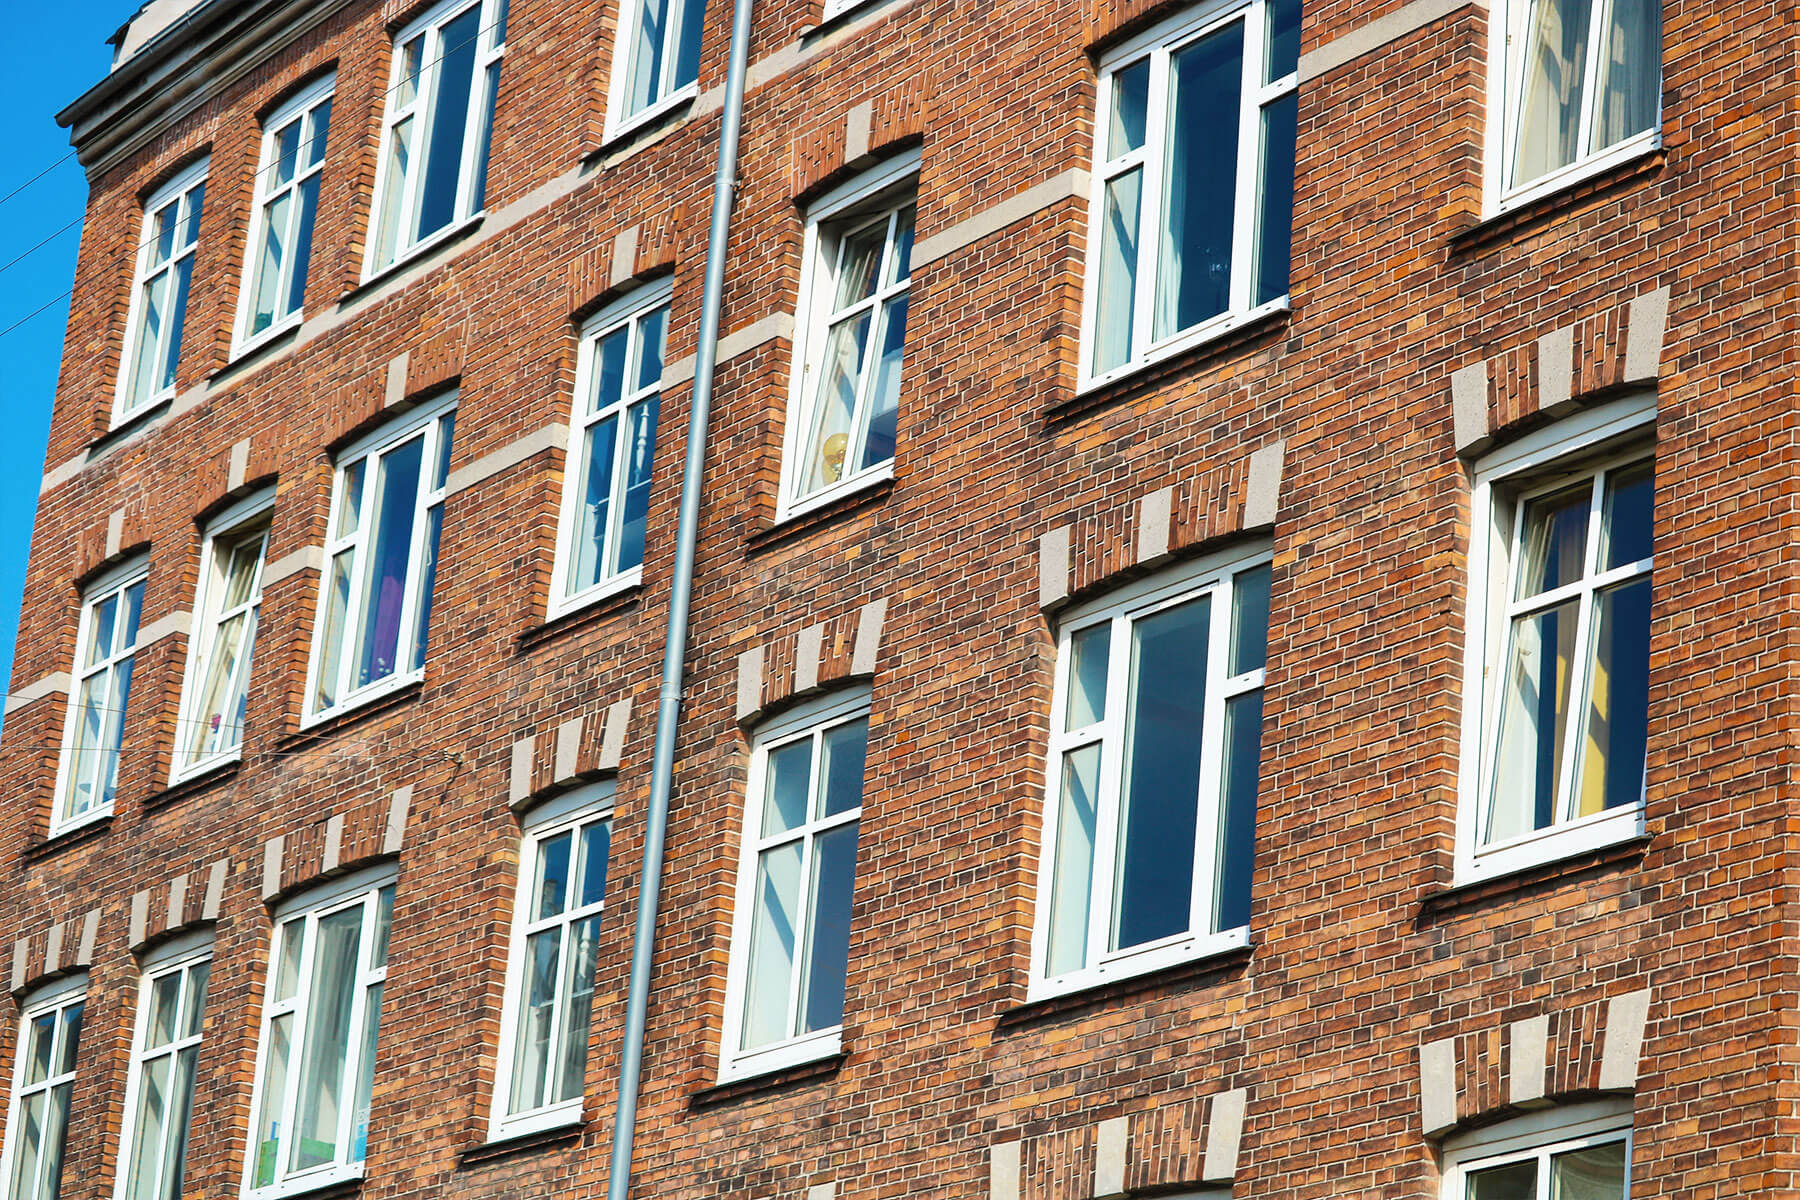 Andelsboligforeningens flotte facade og vinduer på gadesiden af ejendommen